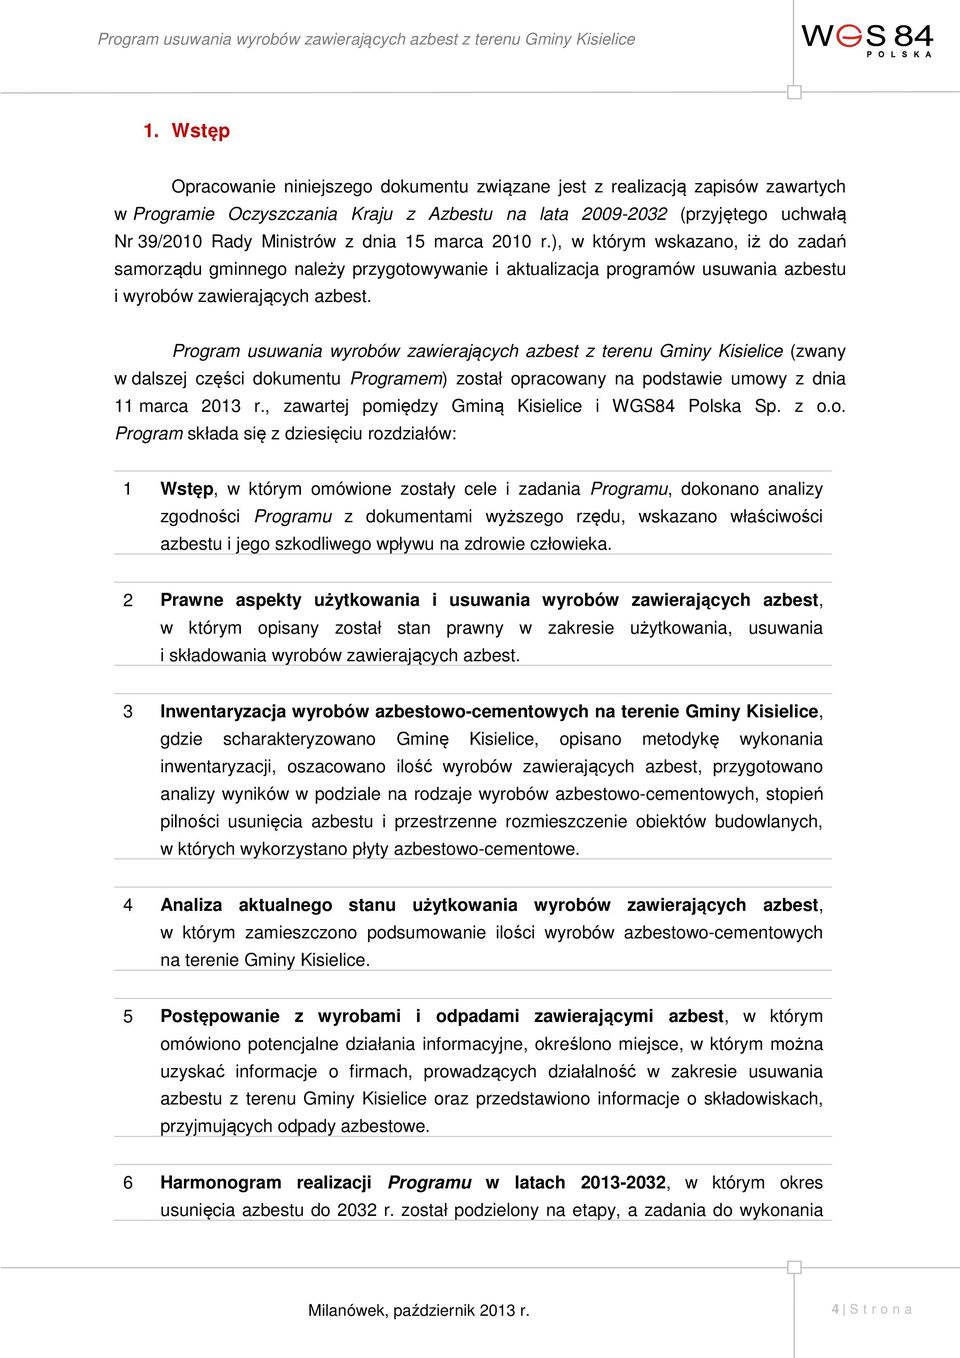 Program usuwania wyrobów zawierających azbest z terenu Gminy Kisielice (zwany w dalszej części dokumentu Programem) został opracowany na podstawie umowy z dnia 11 marca 2013 r.